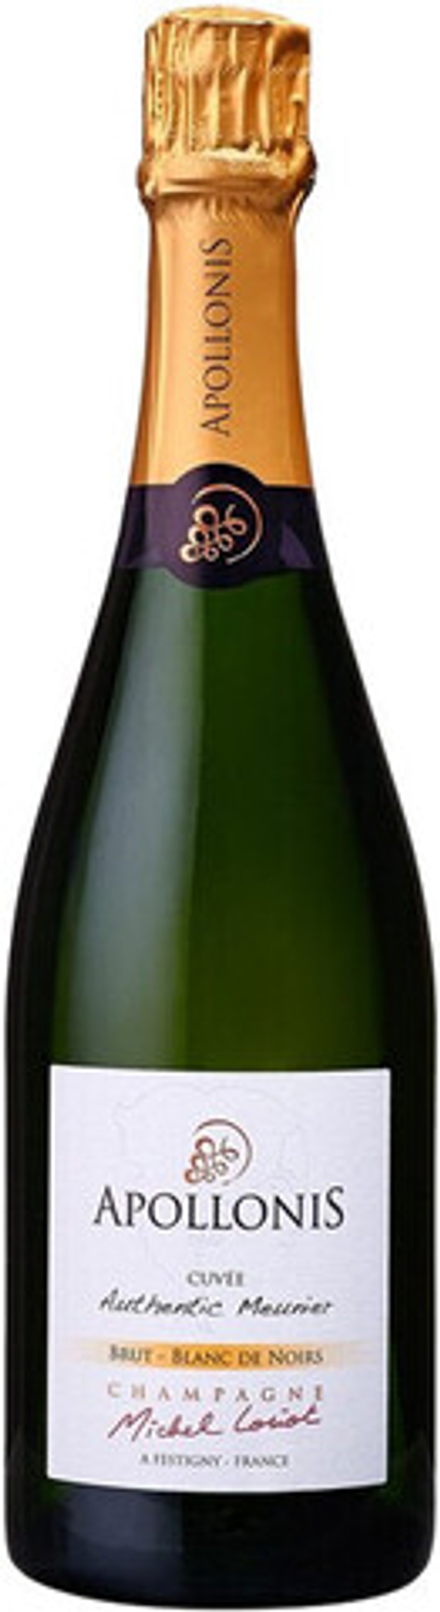 Шампанское Apollonis Cuvee Authentic Meunier Blanc de Noirs Brut Champagne AOC, 0,75 л.